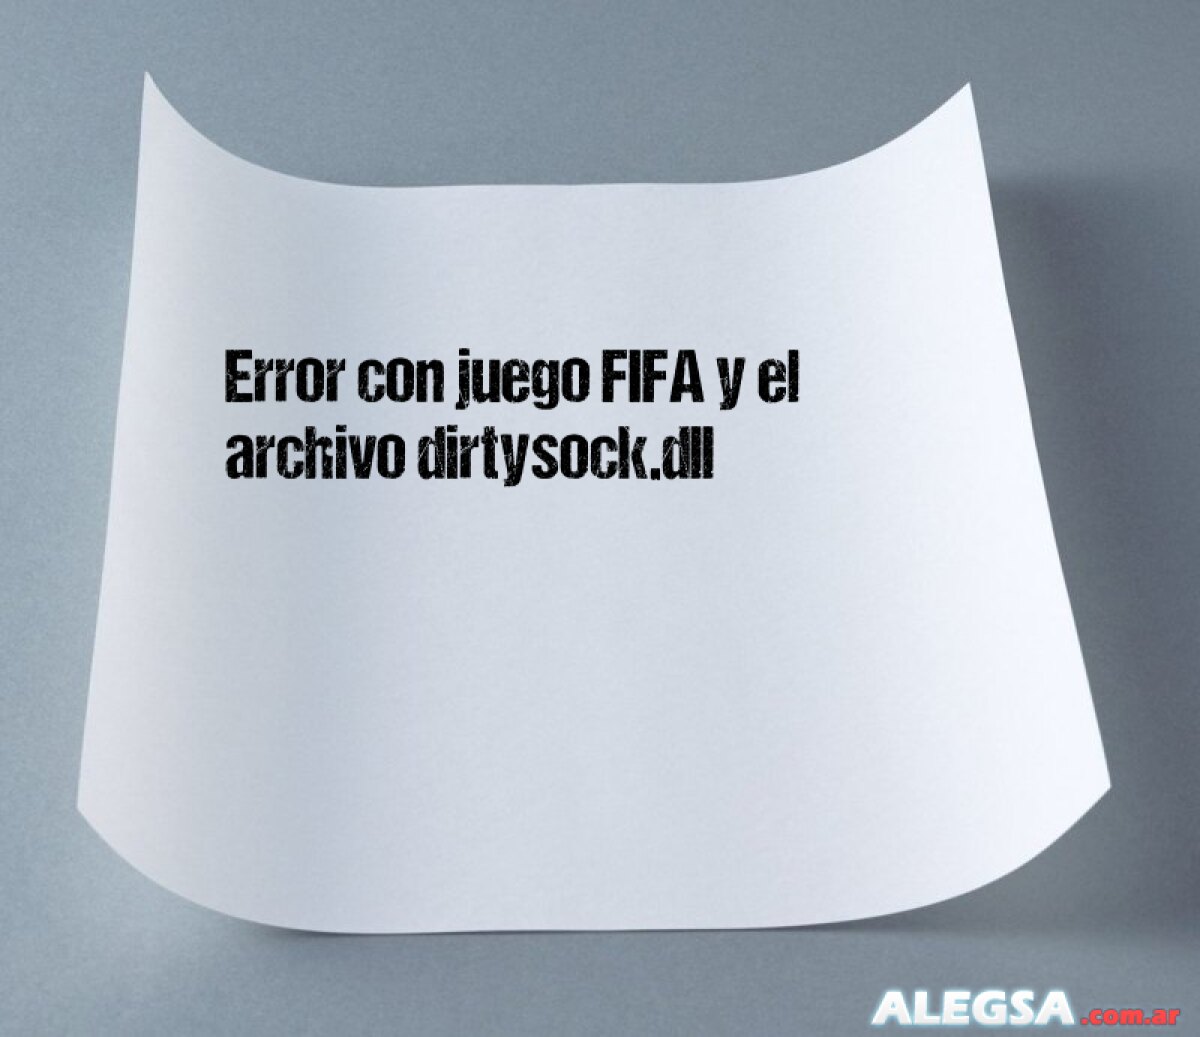 Error con juego FIFA y el archivo dirtysock.dll